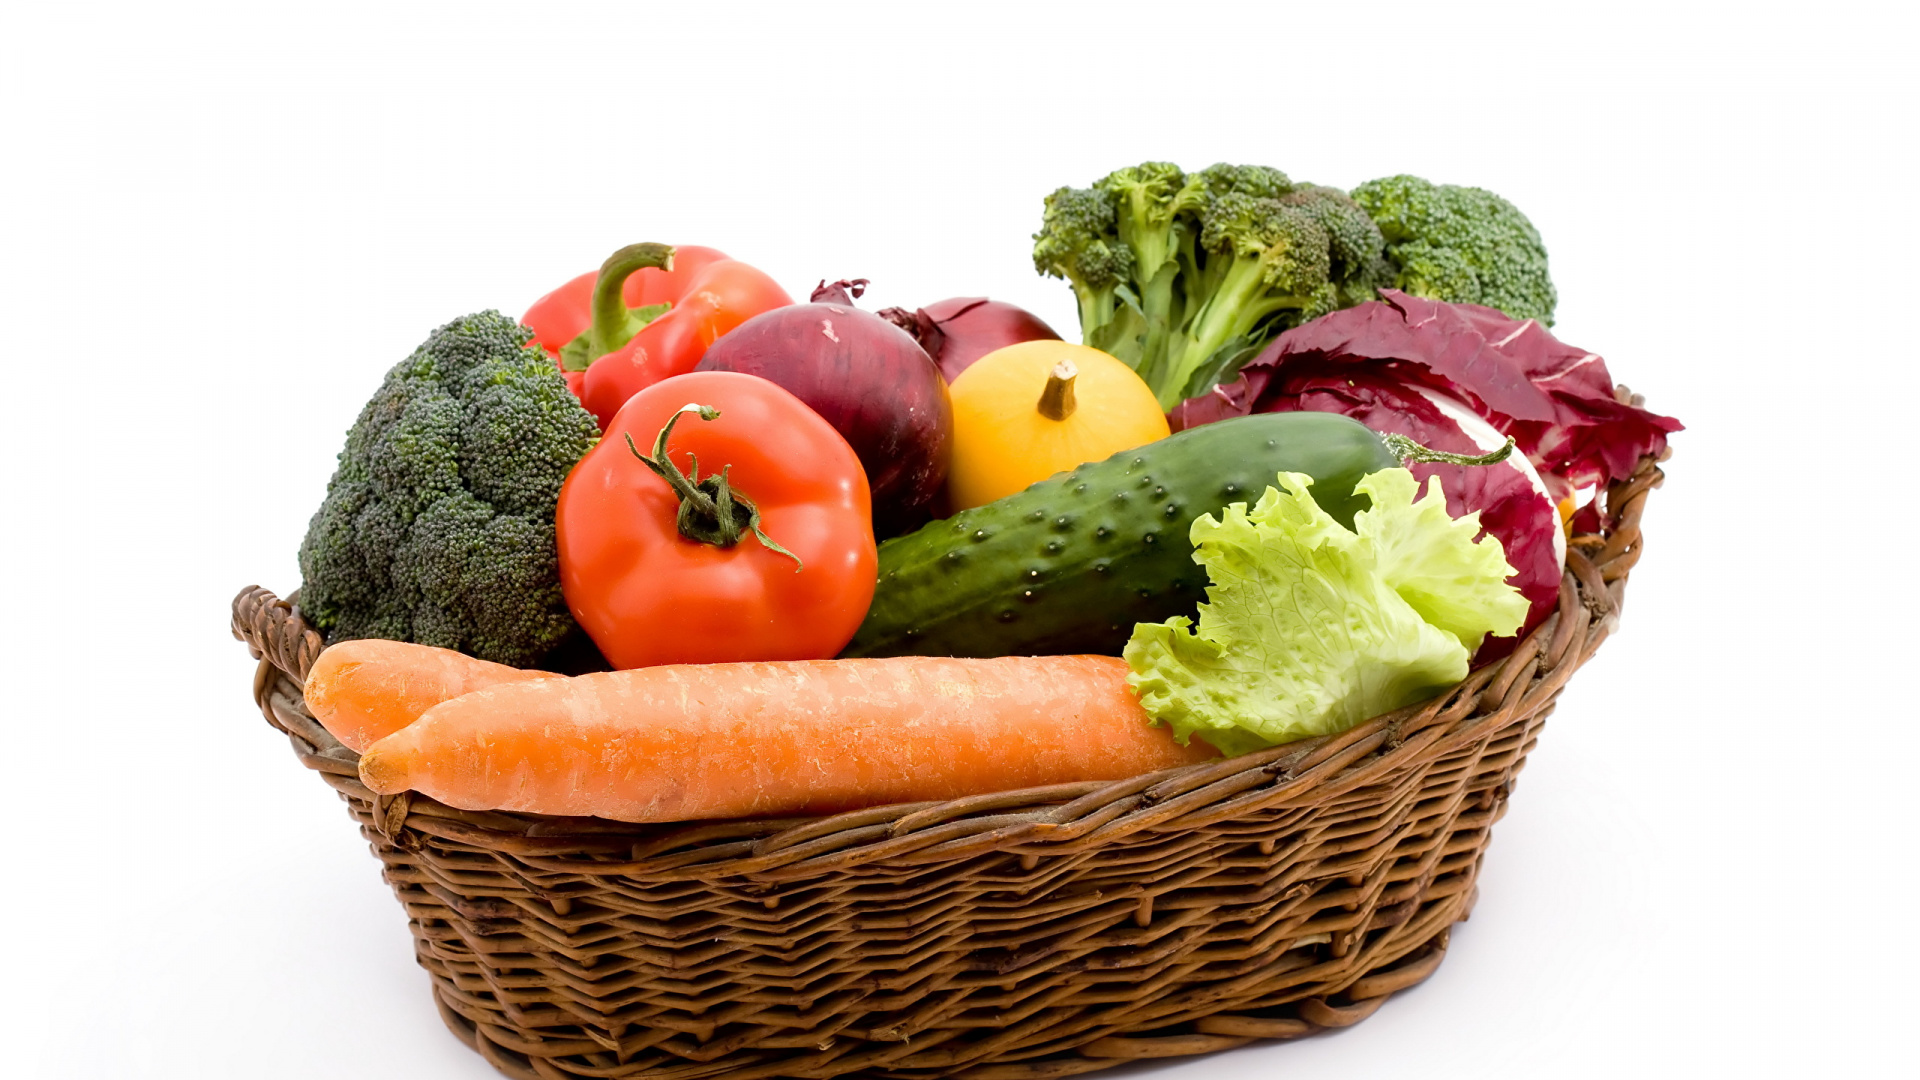 素食, 篮子里, 胡萝卜, 天然的食物, 食品 壁纸 1920x1080 允许